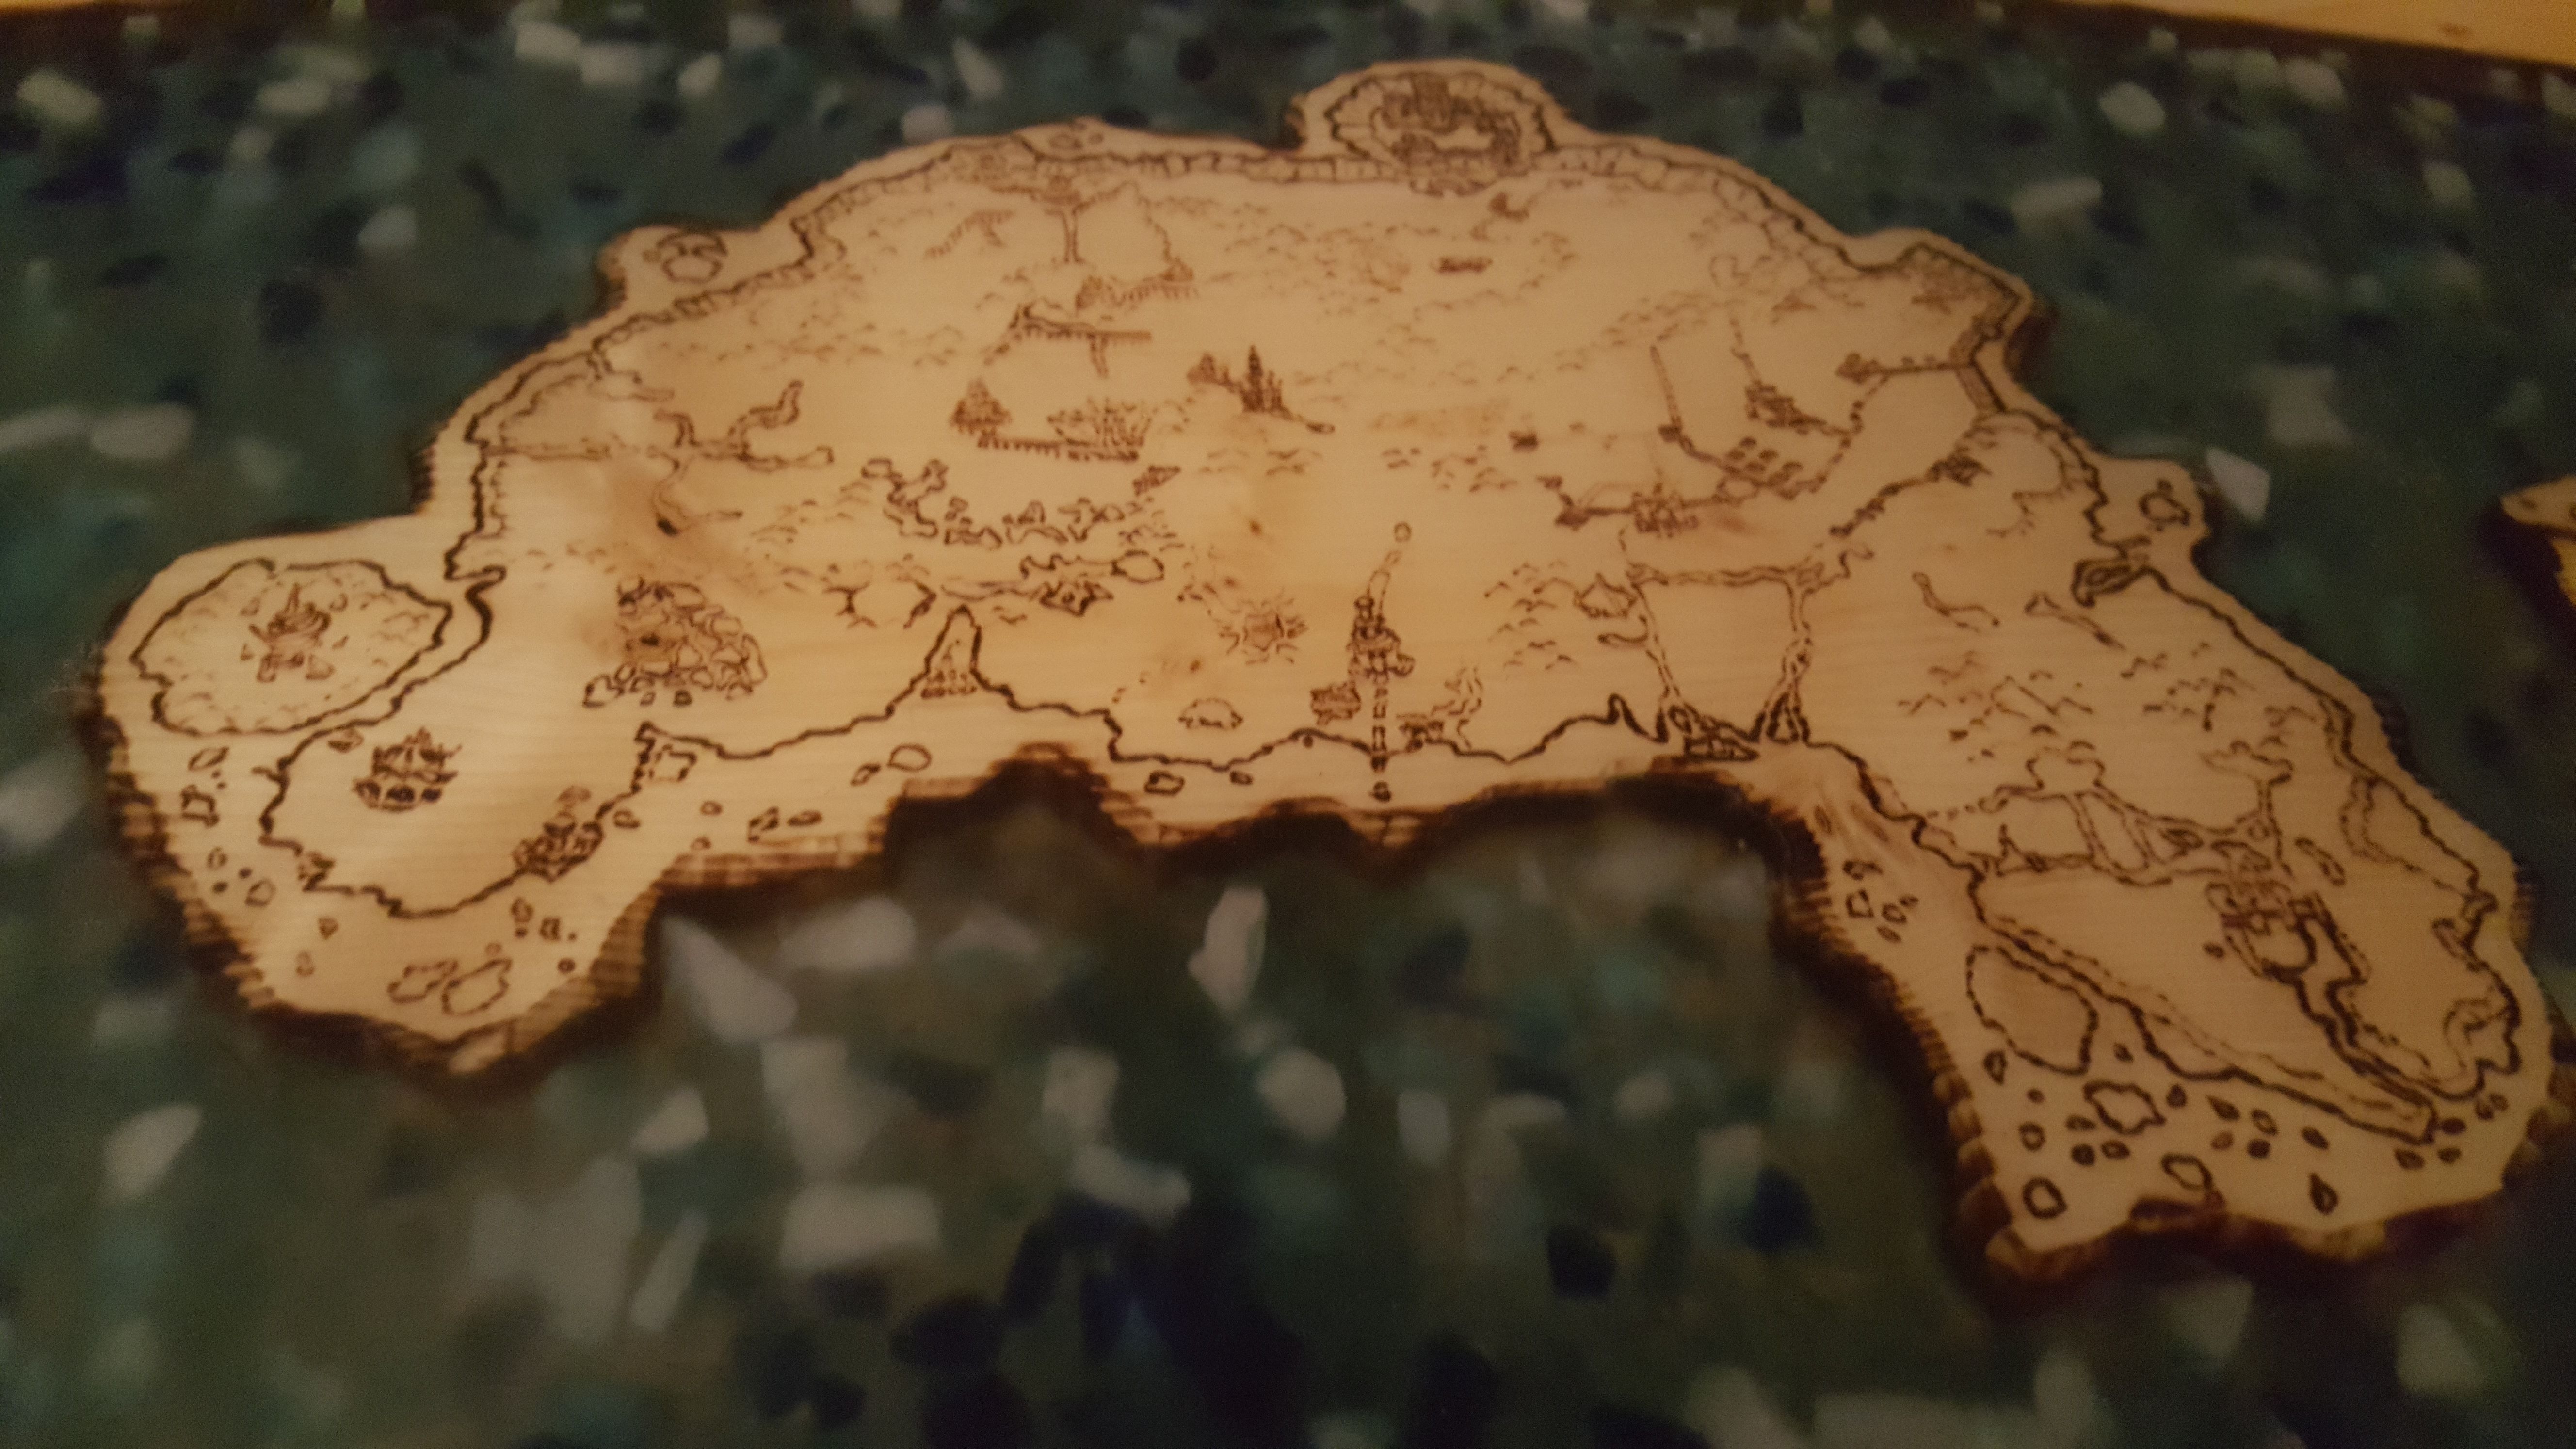 Столешница с картой Азерота.
Источник: reddit